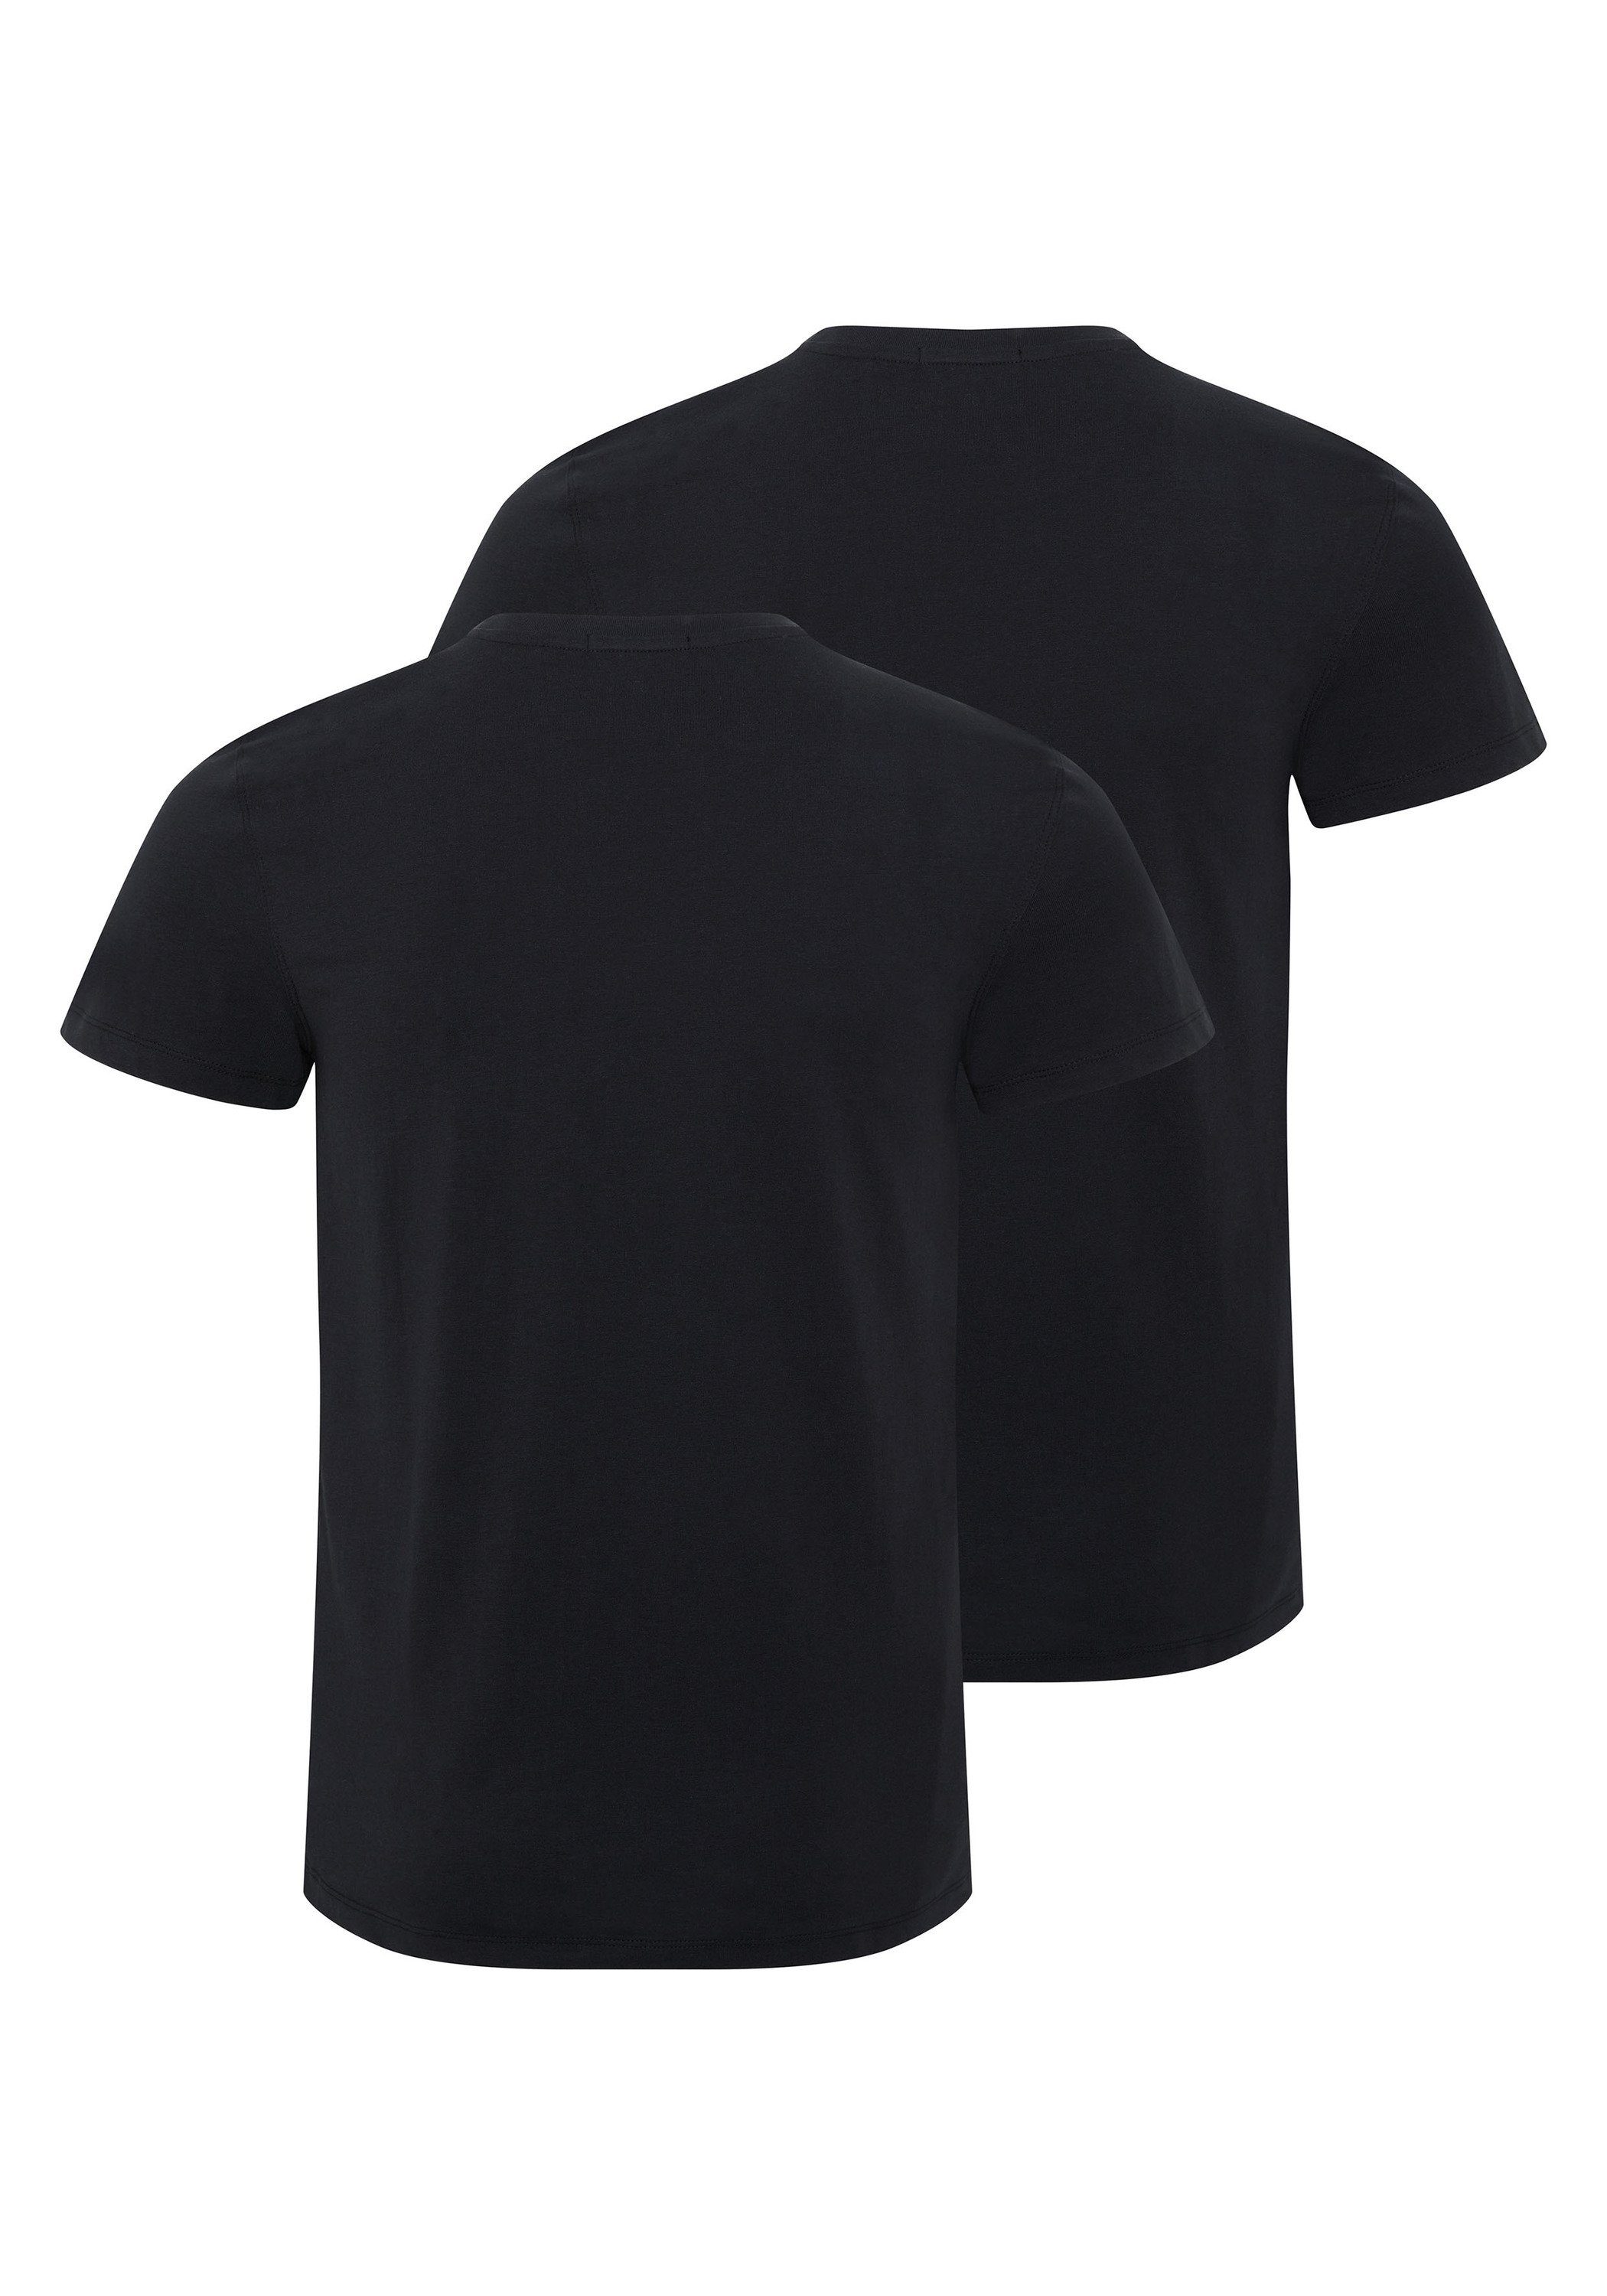 T-Shirts Print-Shirt Chiemsee im Logo mit 2 Deep Basic-Stil Black